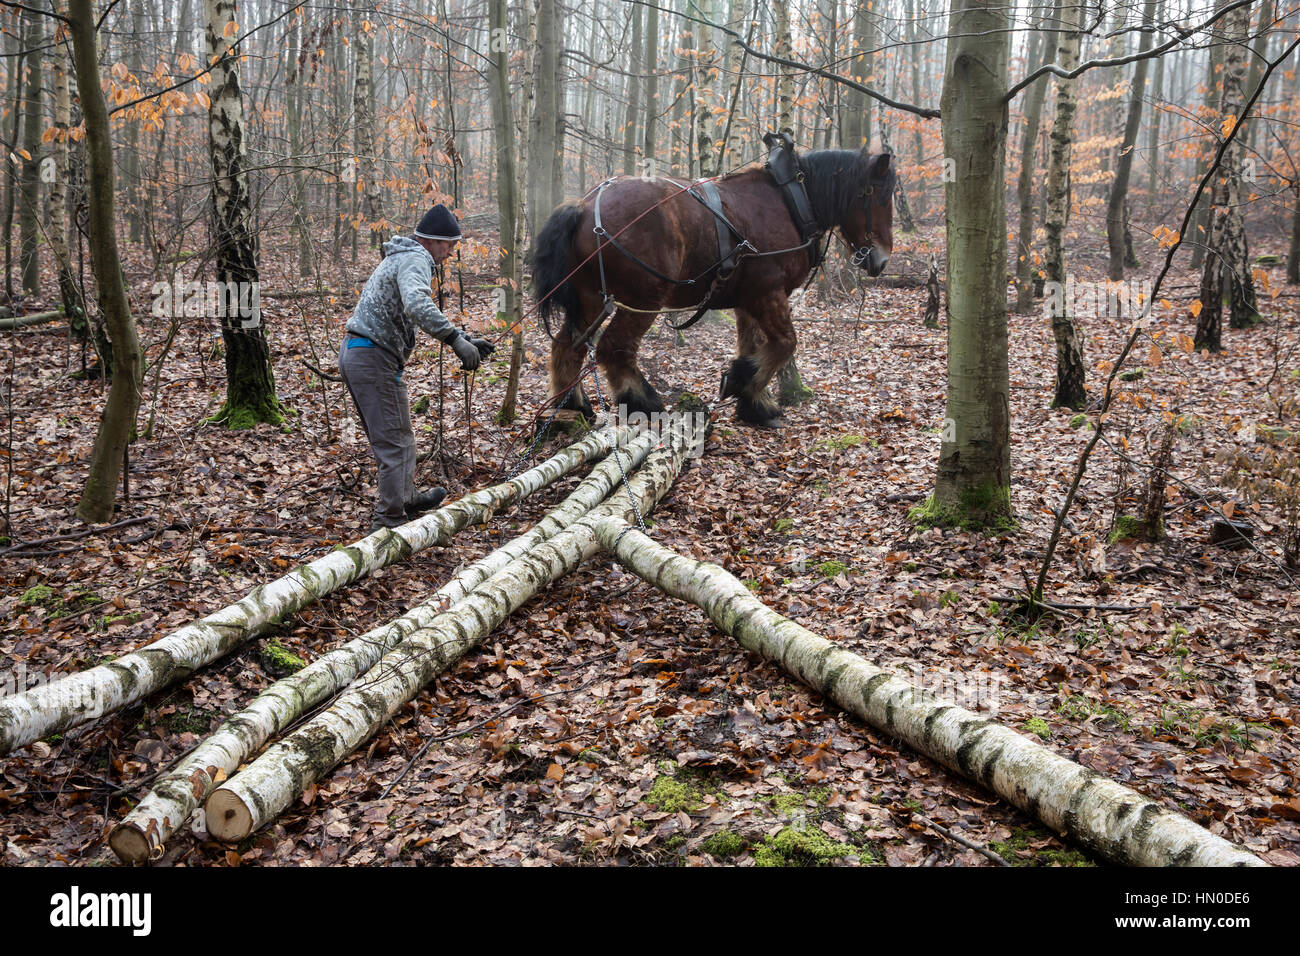 Coldblood cheval de tirant de sciage dans une forêt en Allemagne Banque D'Images